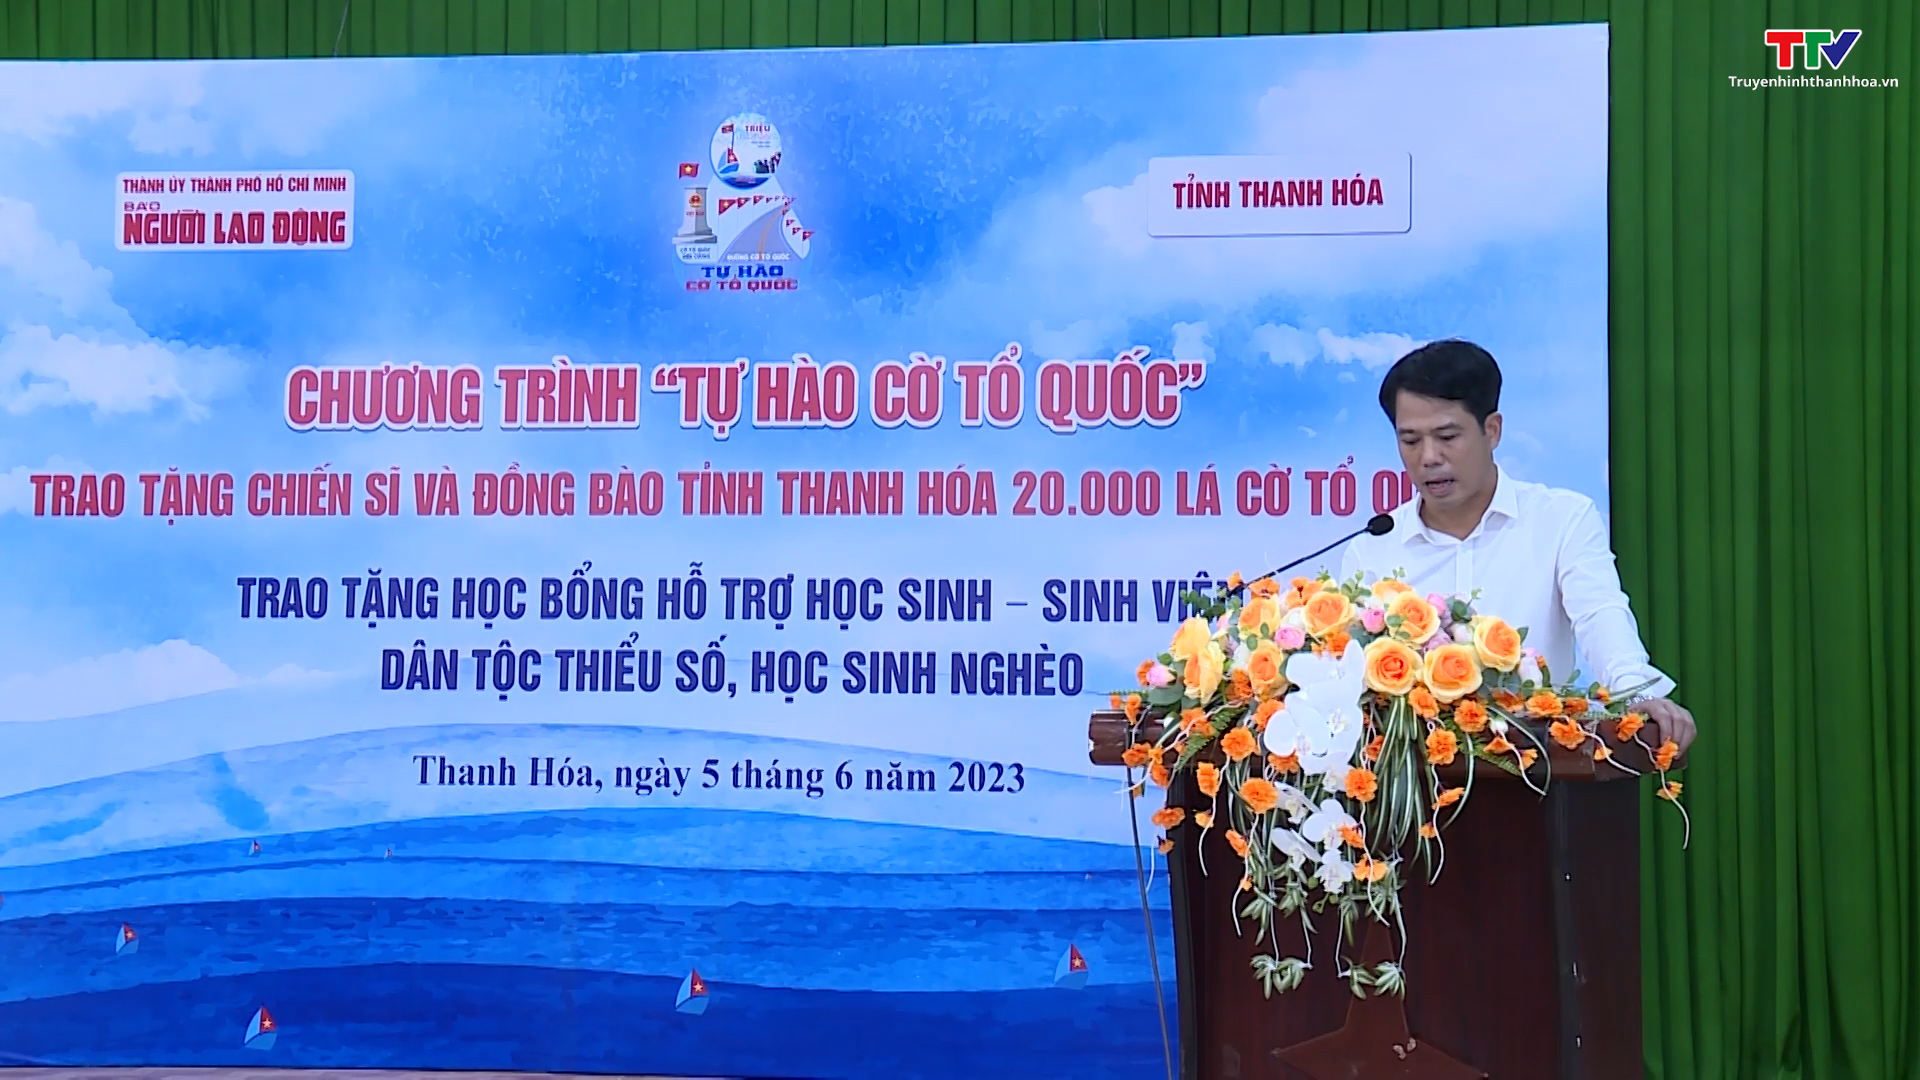 Báo Người lao động trao tặng 20.000 lá cờ Tổ quốc cho tỉnh Thanh Hóa - Ảnh 5.